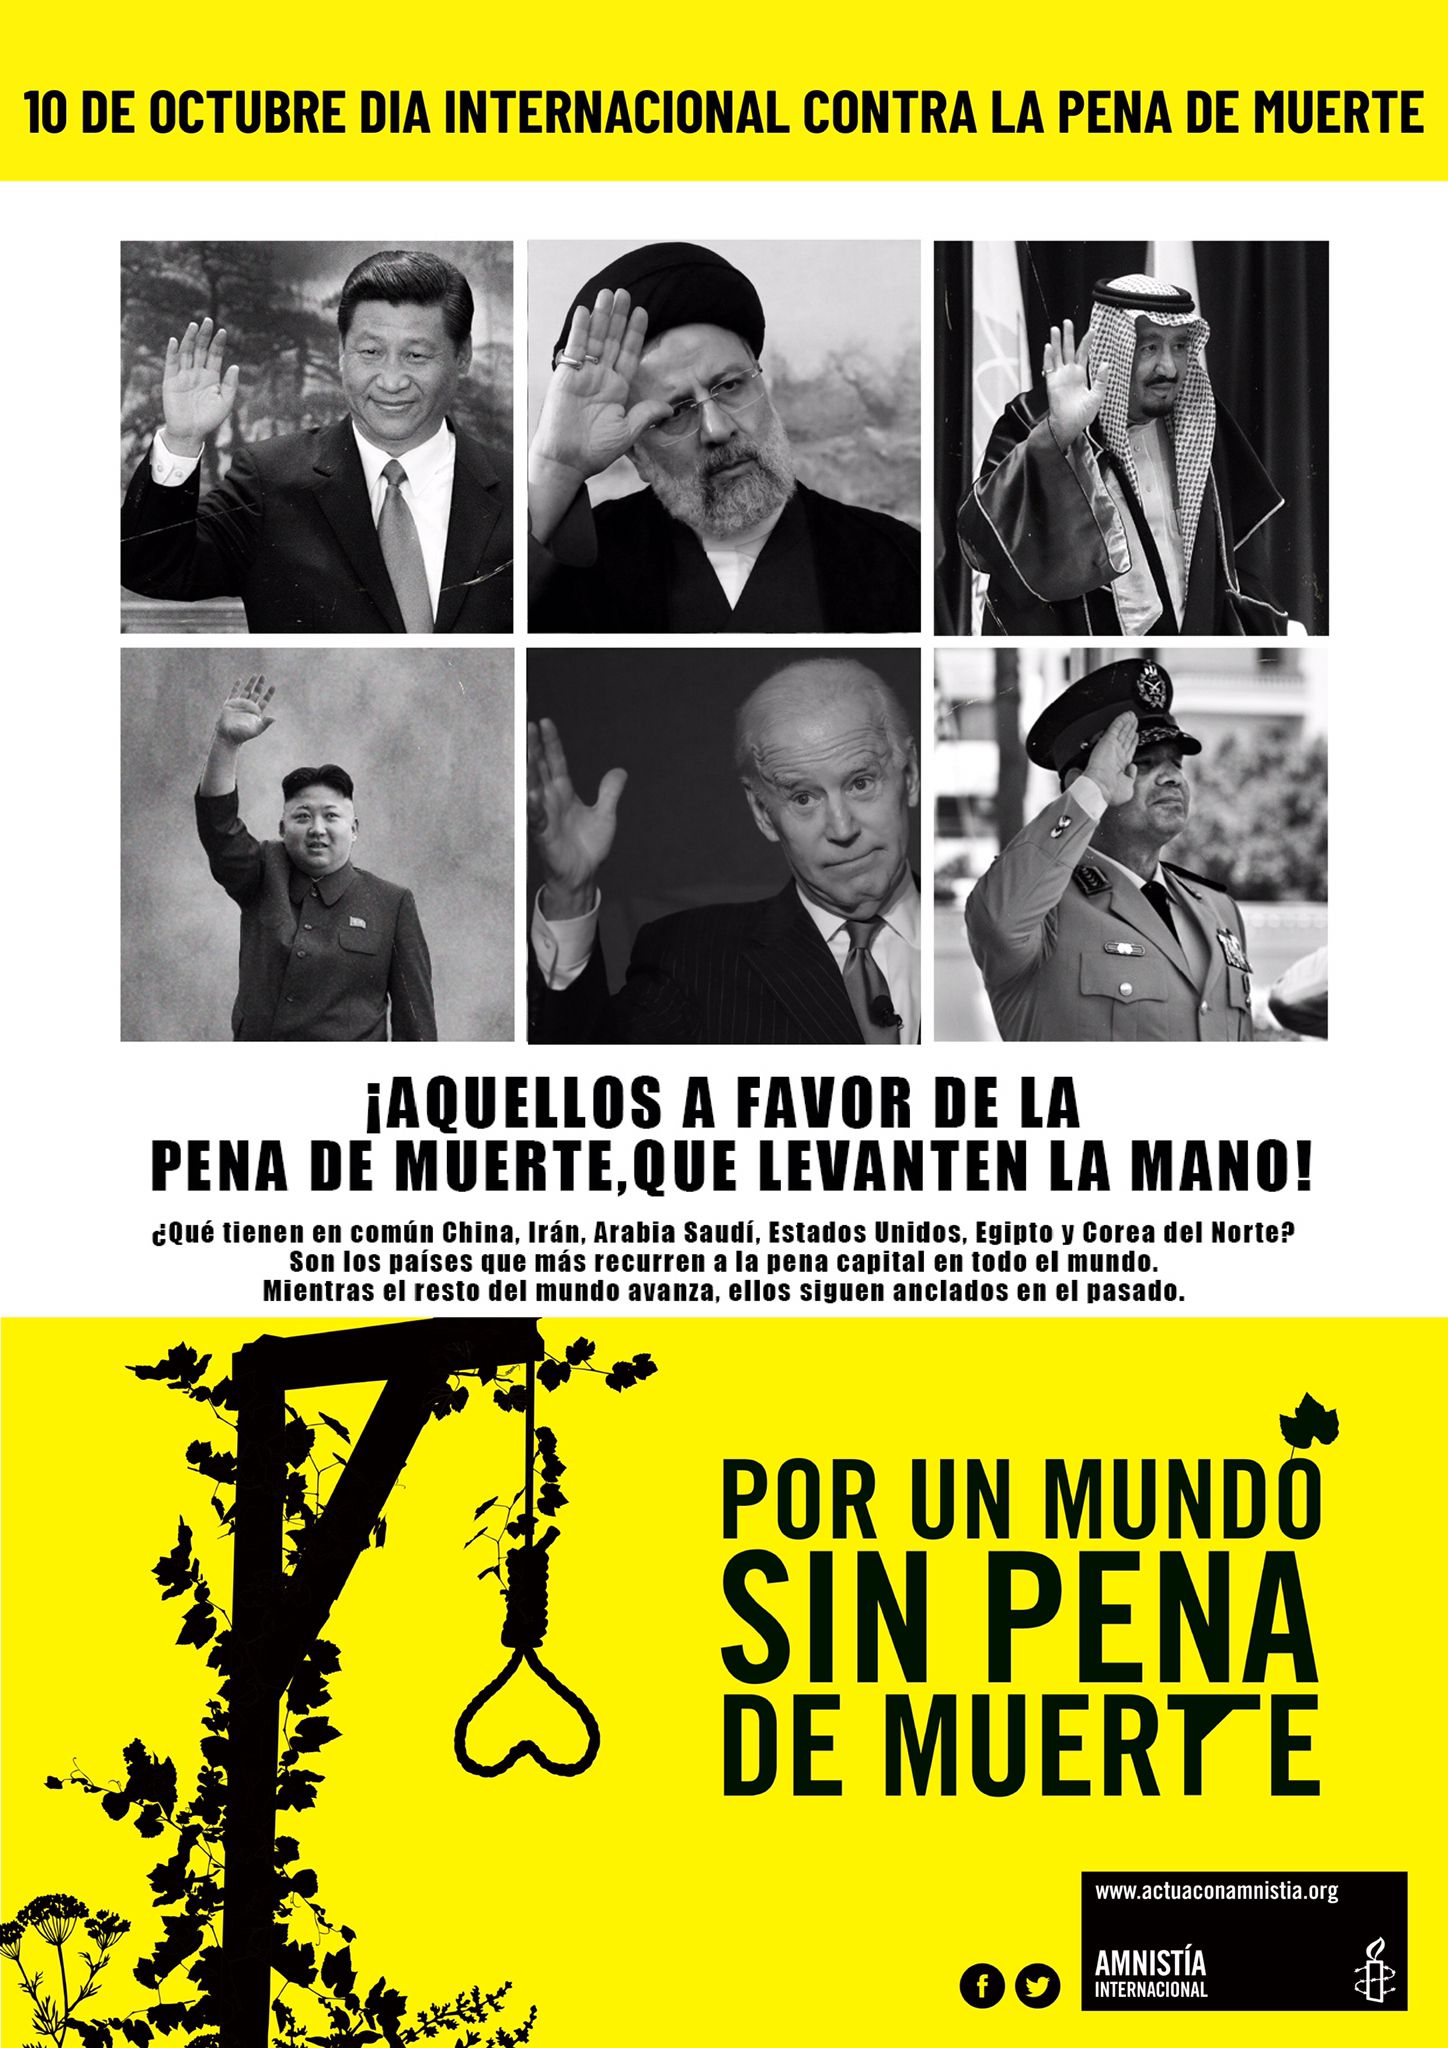 [Madrid] En conmemoración del Día Internacional Contra la Pena de Muerte